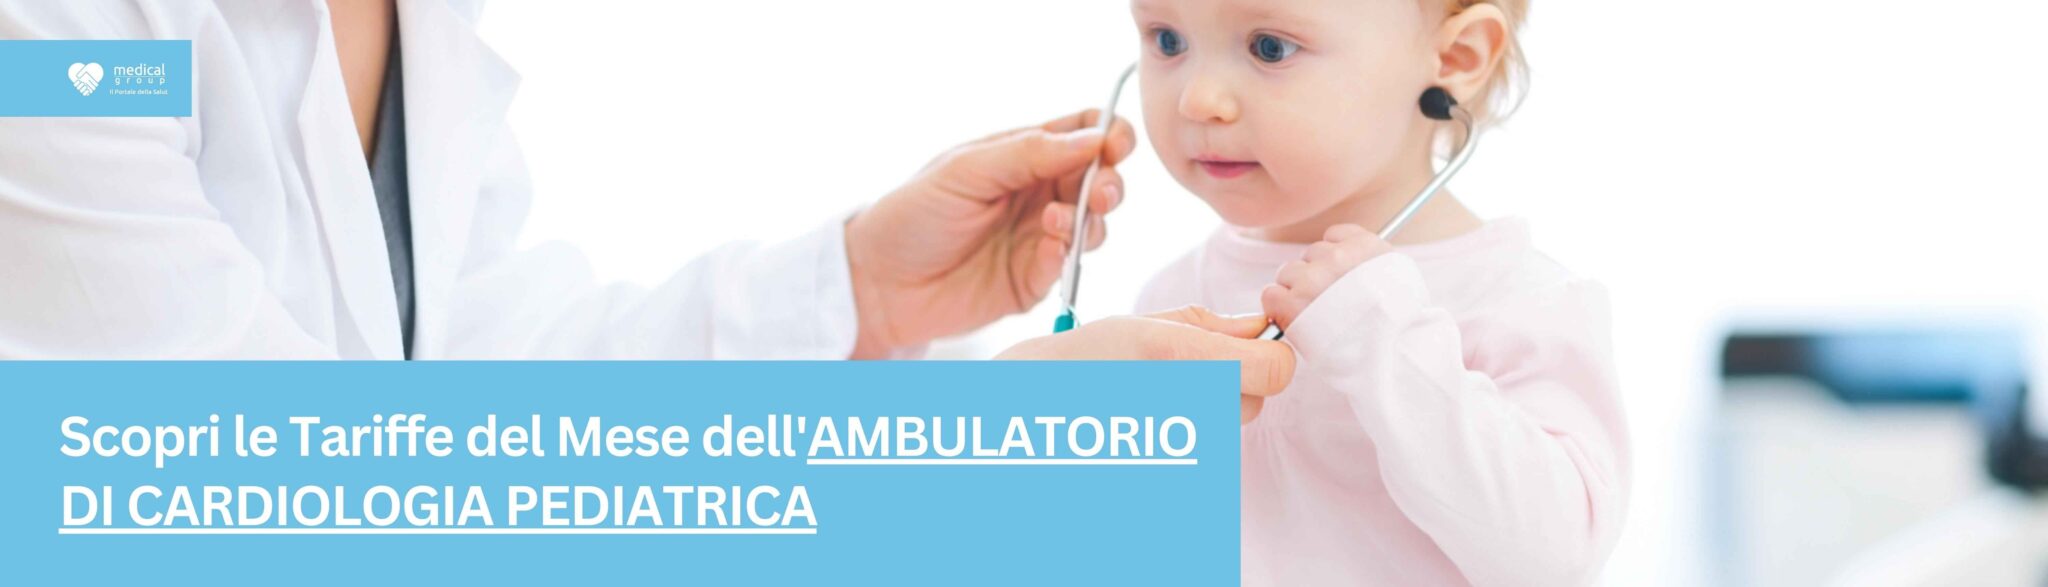 Tariffe del Mese Poliambulatorio Cardiologia Pediatrica F-Medical Frosinone_1_11zon